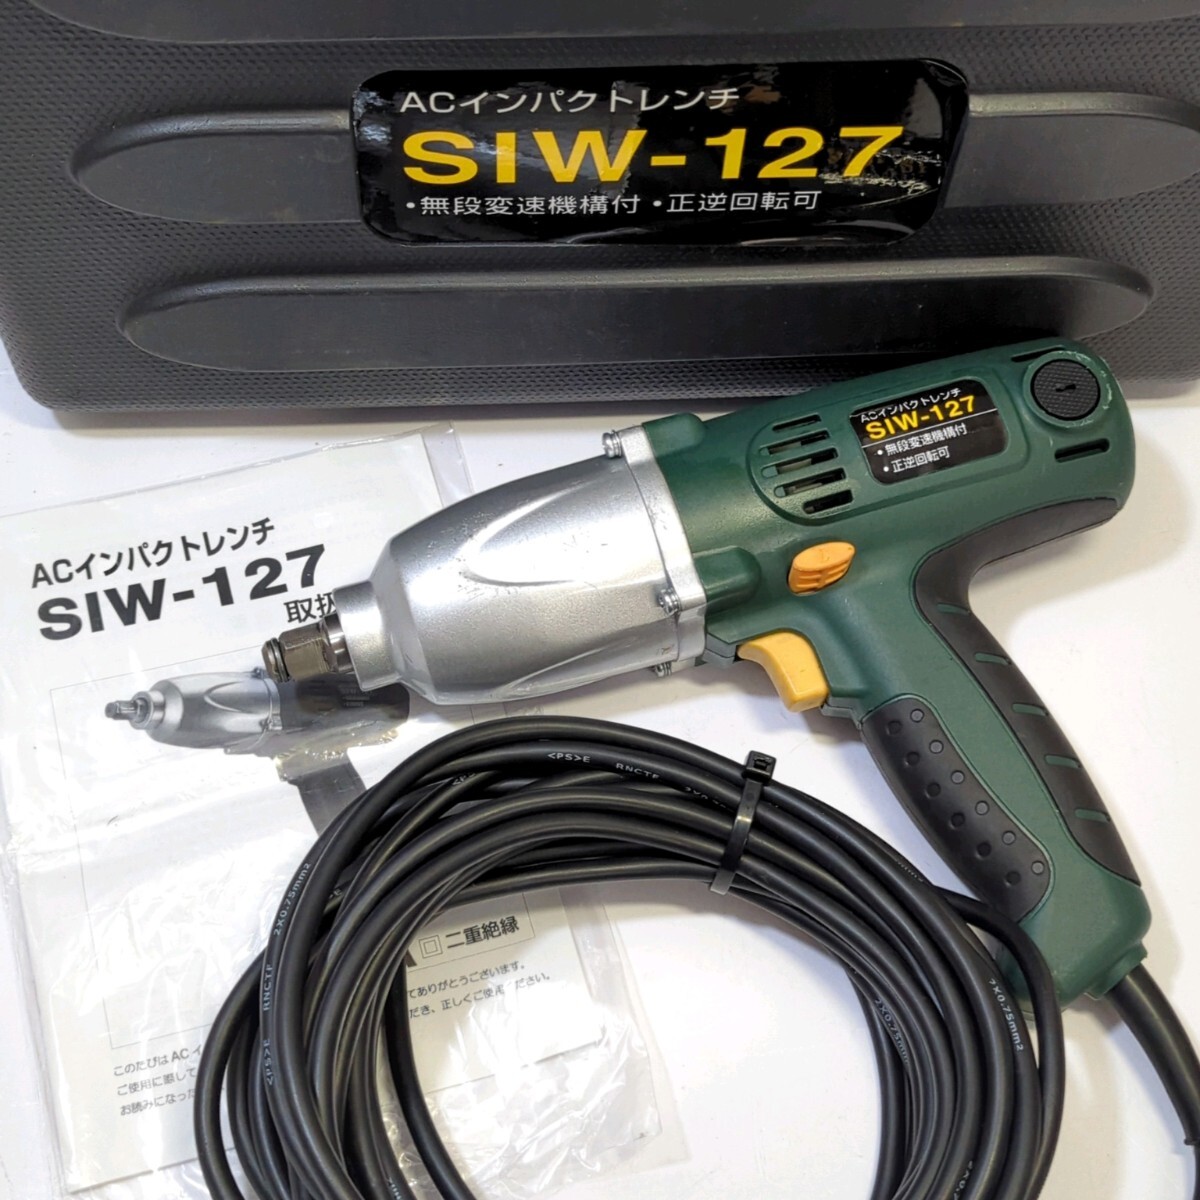 新興製作所 インパクトレンチ 100V SIW-127 電動インパクトレンチ 電動工具 SHINKO_画像1